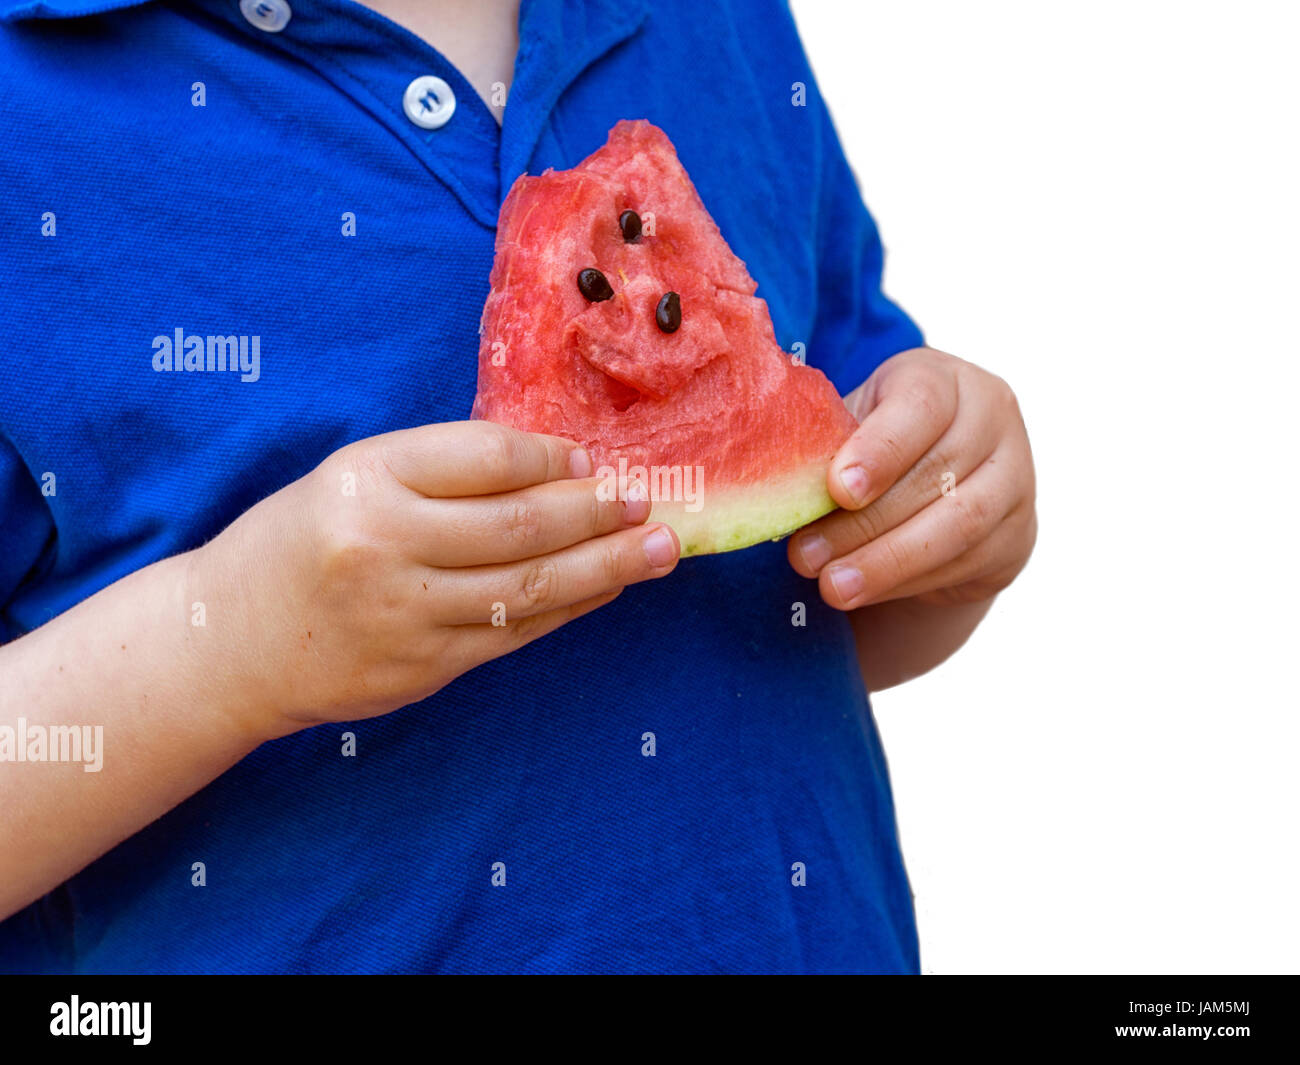 Petit garçon, plutôt dodu, eating watermelon. Concept de la petite enfance en santé. Arrière-plan blanc. Banque D'Images